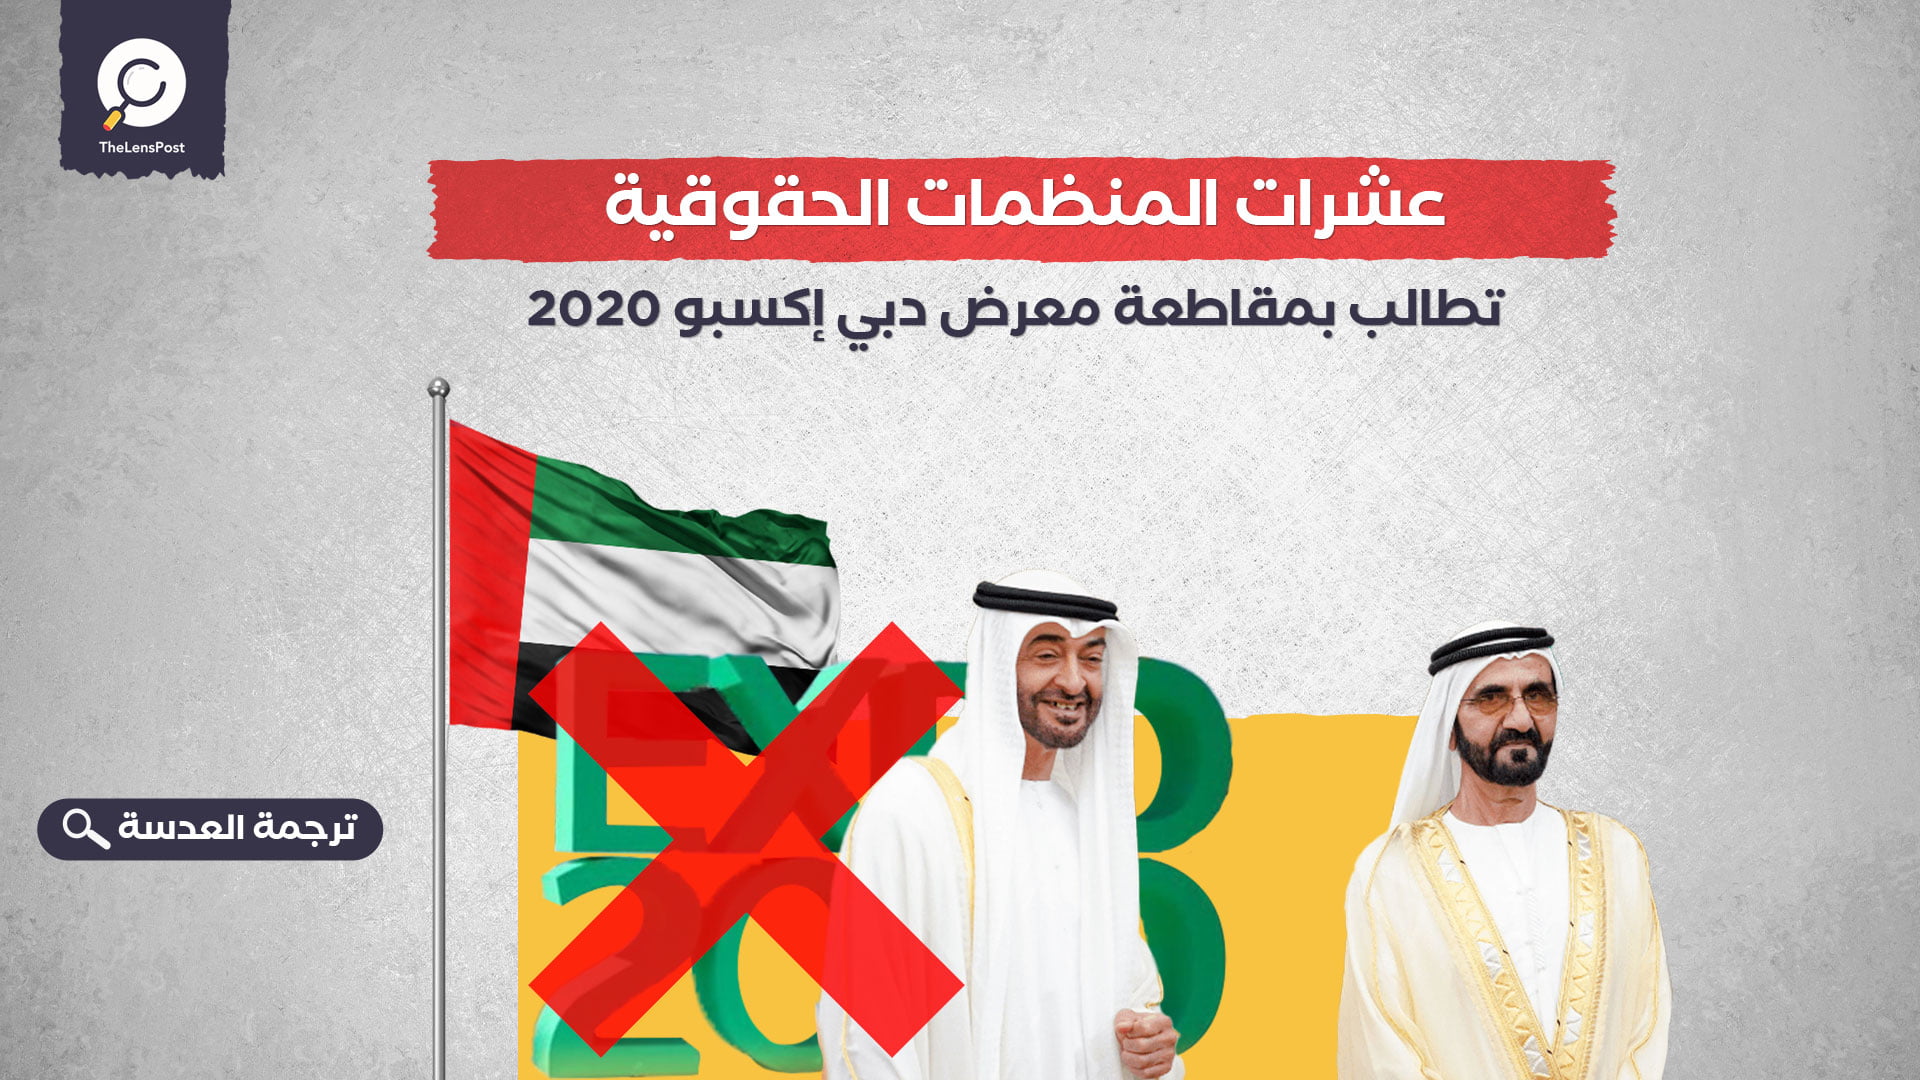 عشرات المنظمات الحقوقية تطالب بمقاطعة معرض دبي إكسبو 2020